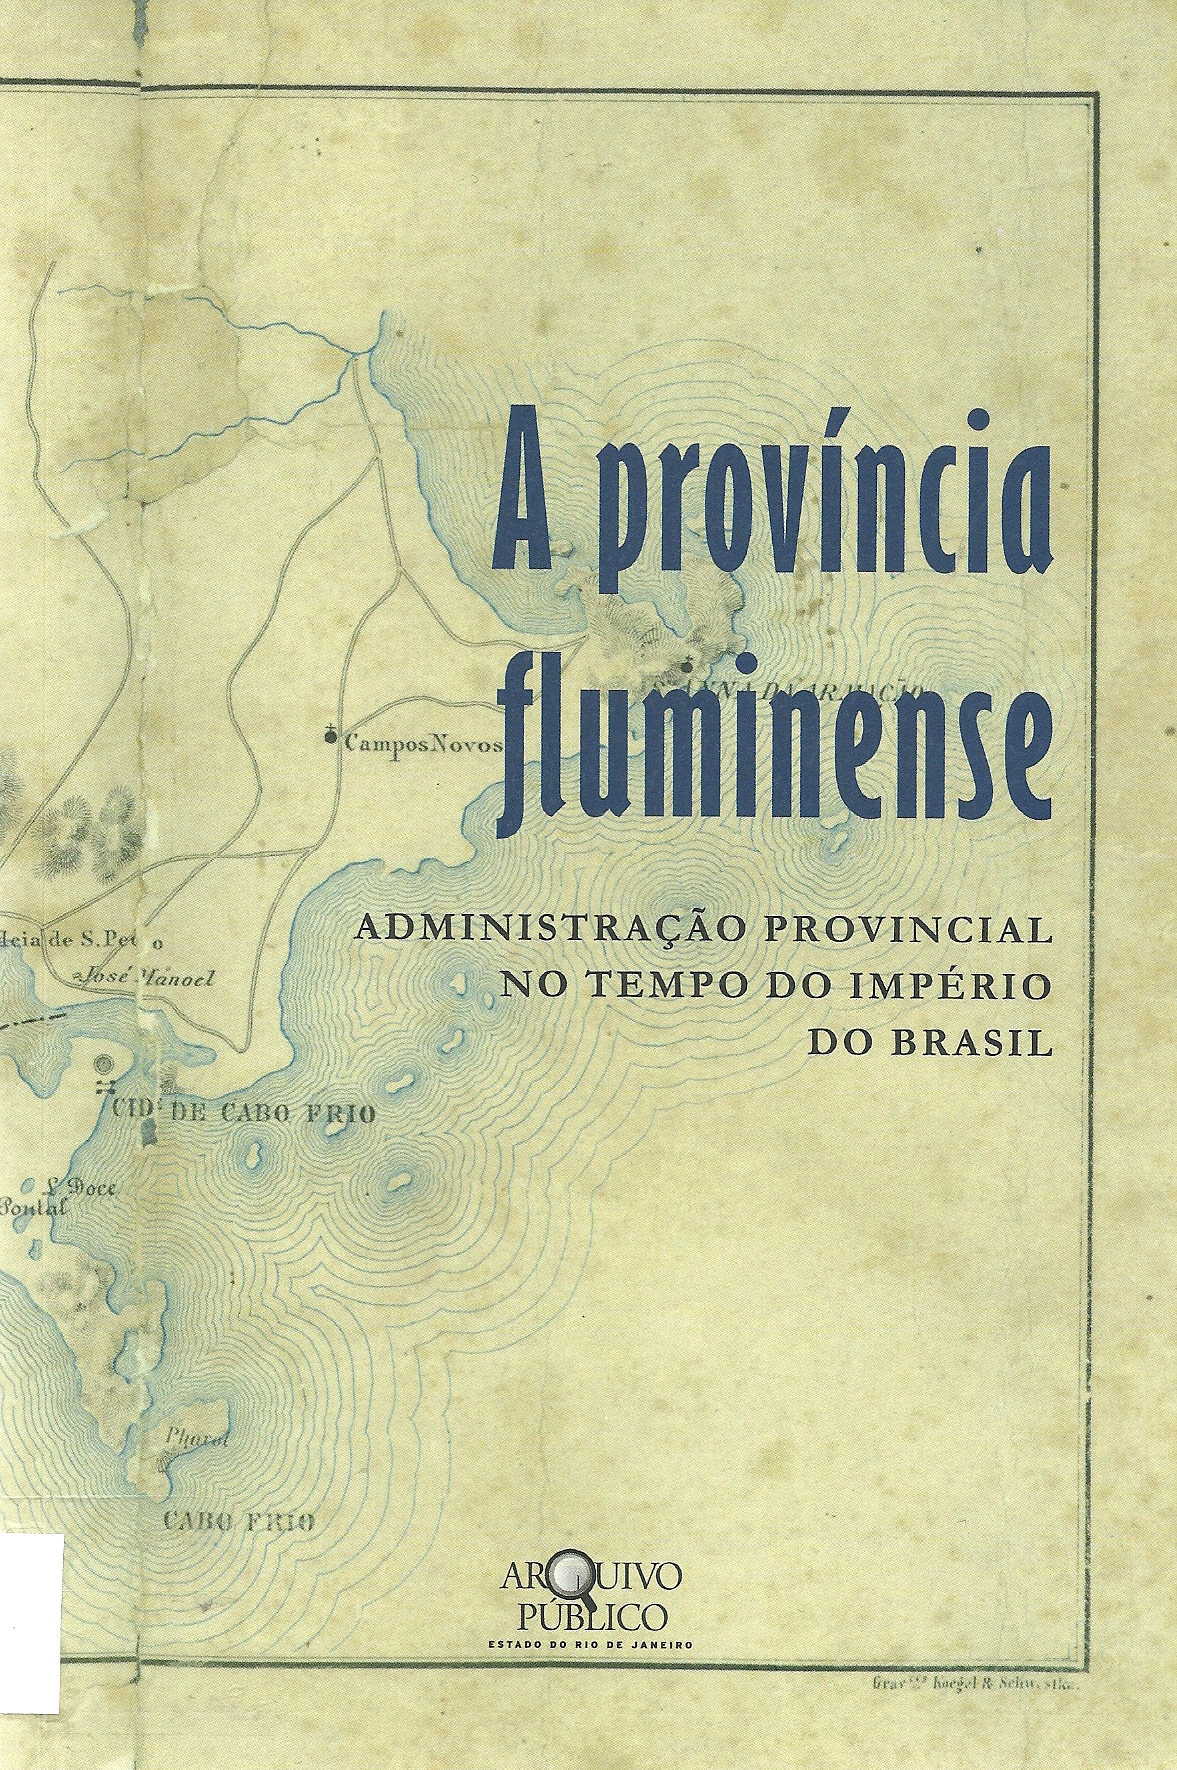 Provncia-Fluminense.jpg